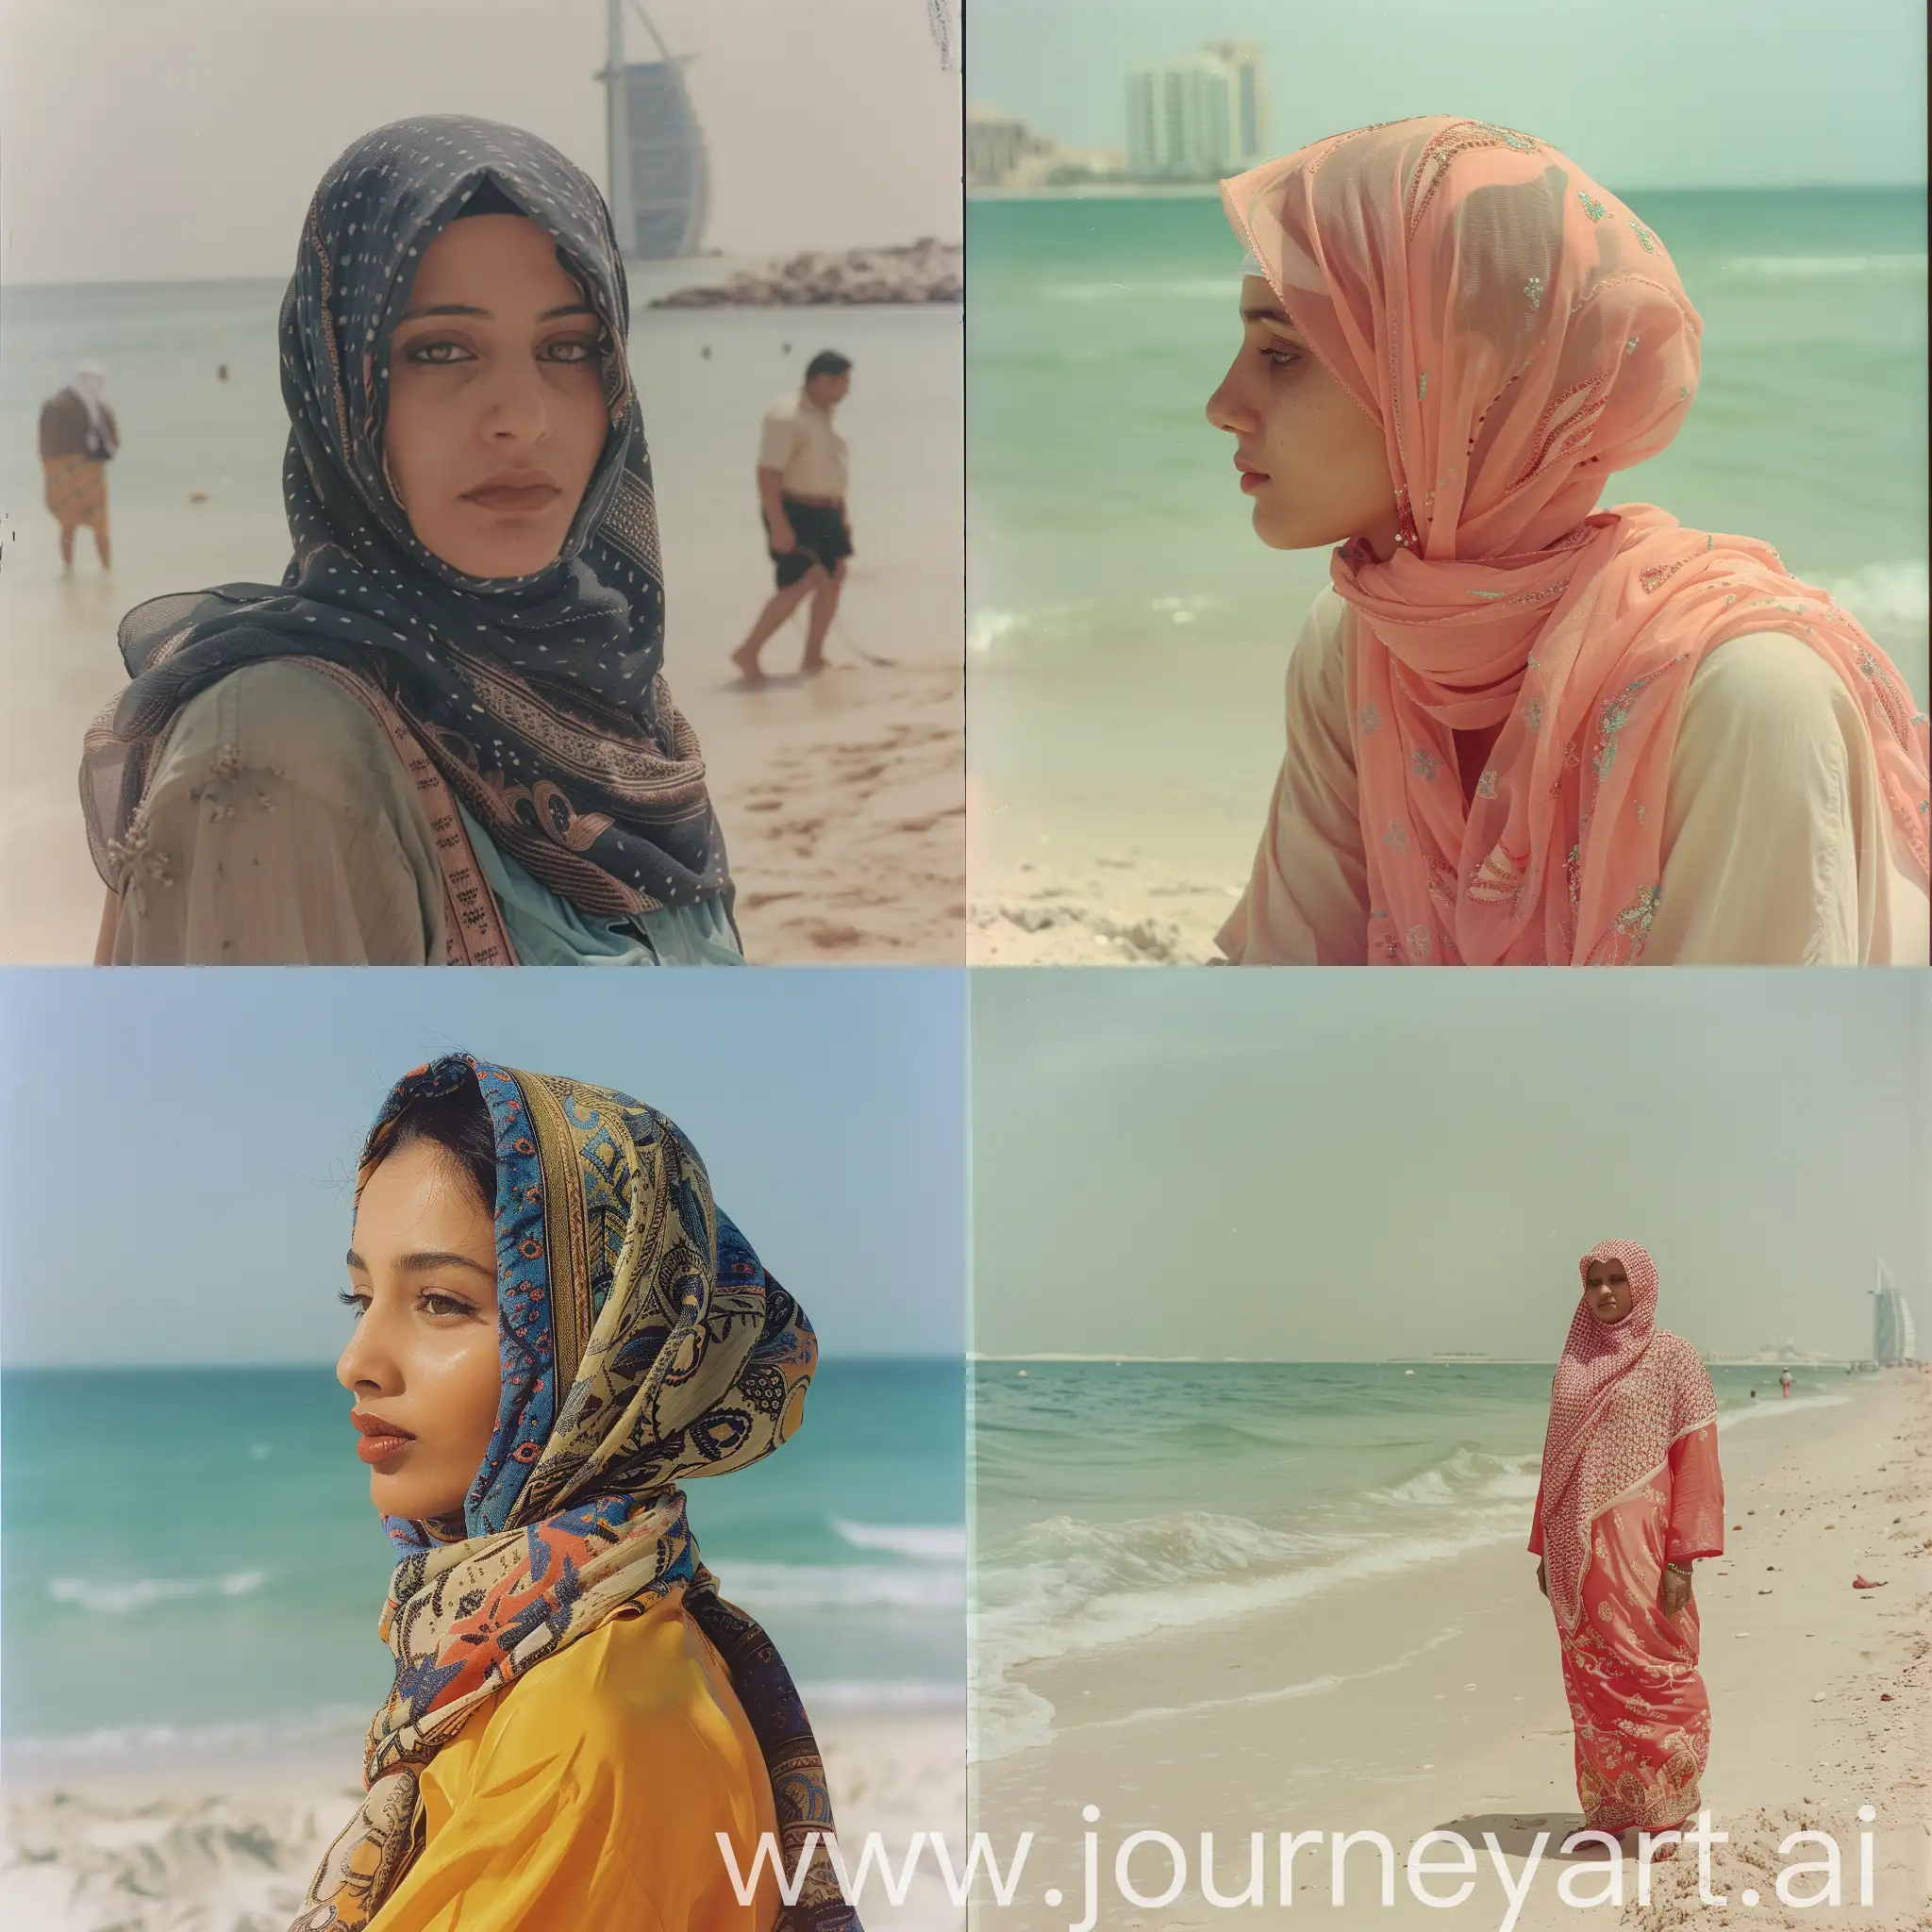 Arabic-Woman-Enjoying-Beach-Sunset-in-1990s-Dubai